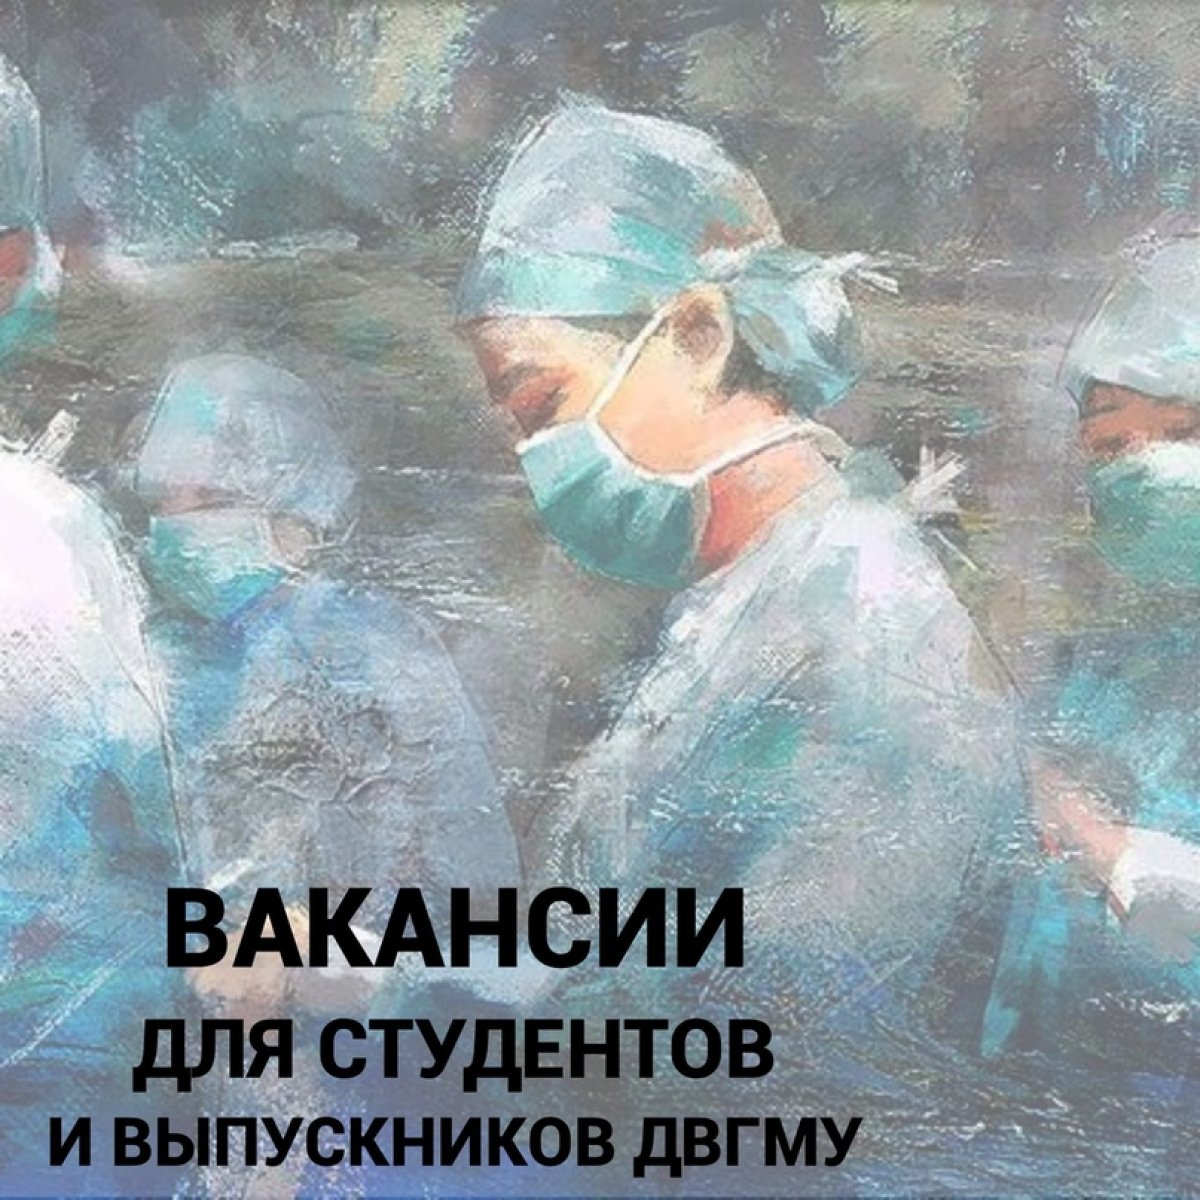 В 3 Городскую клиническую поликлинику (Дикопольцева 34) требуются медицинские сестры процедурного кабинета. Достойная зарплата